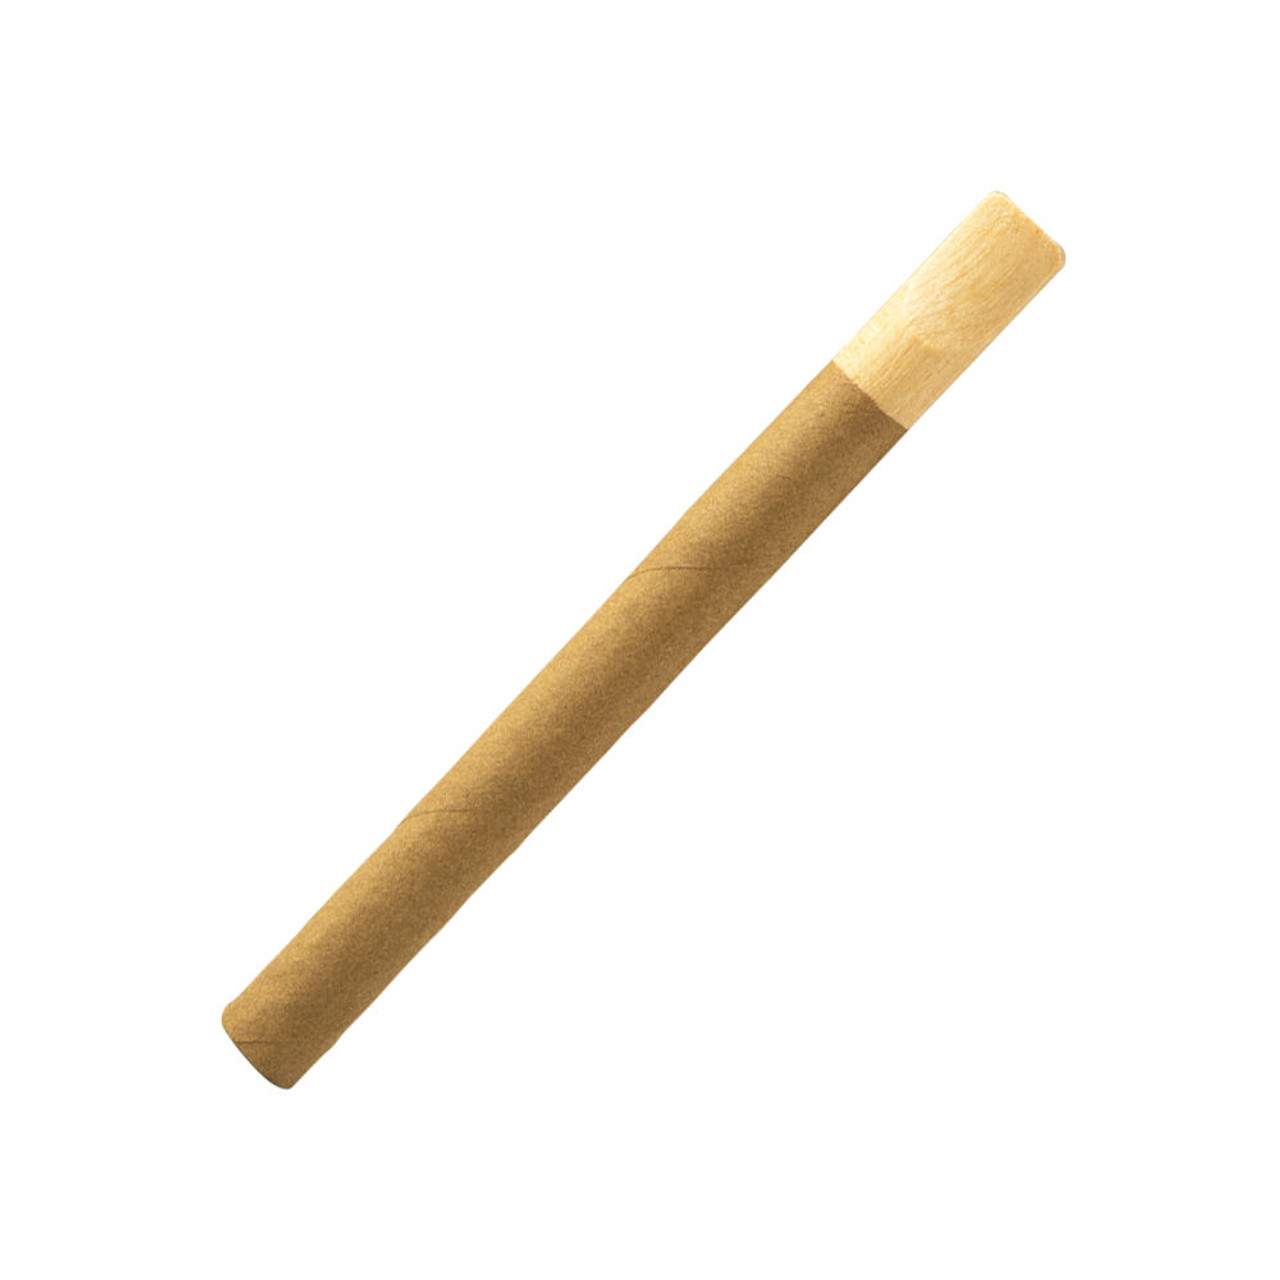 Swisher Sweets Wood Tips Cigars - 5 x 30 Single